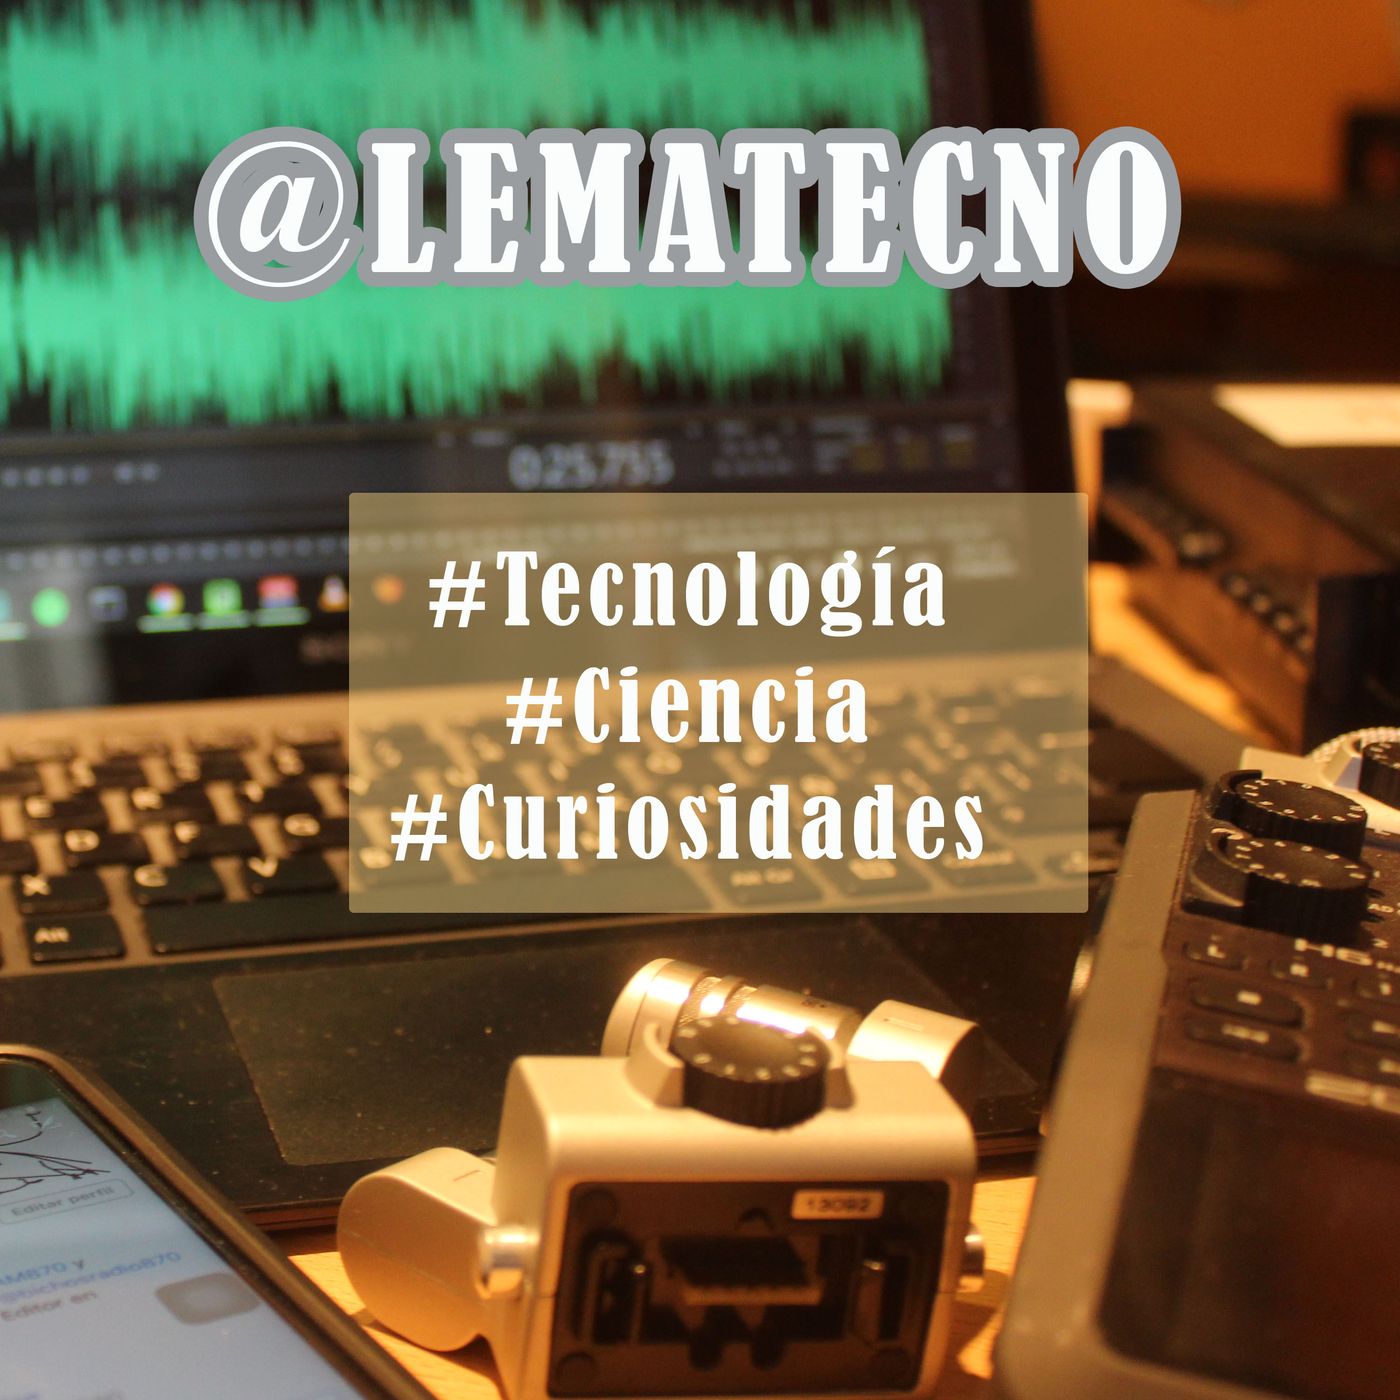 Tecnologia - 28/9/18 Lematecno podcast noticias semanales con @agucammisa y @lematecno